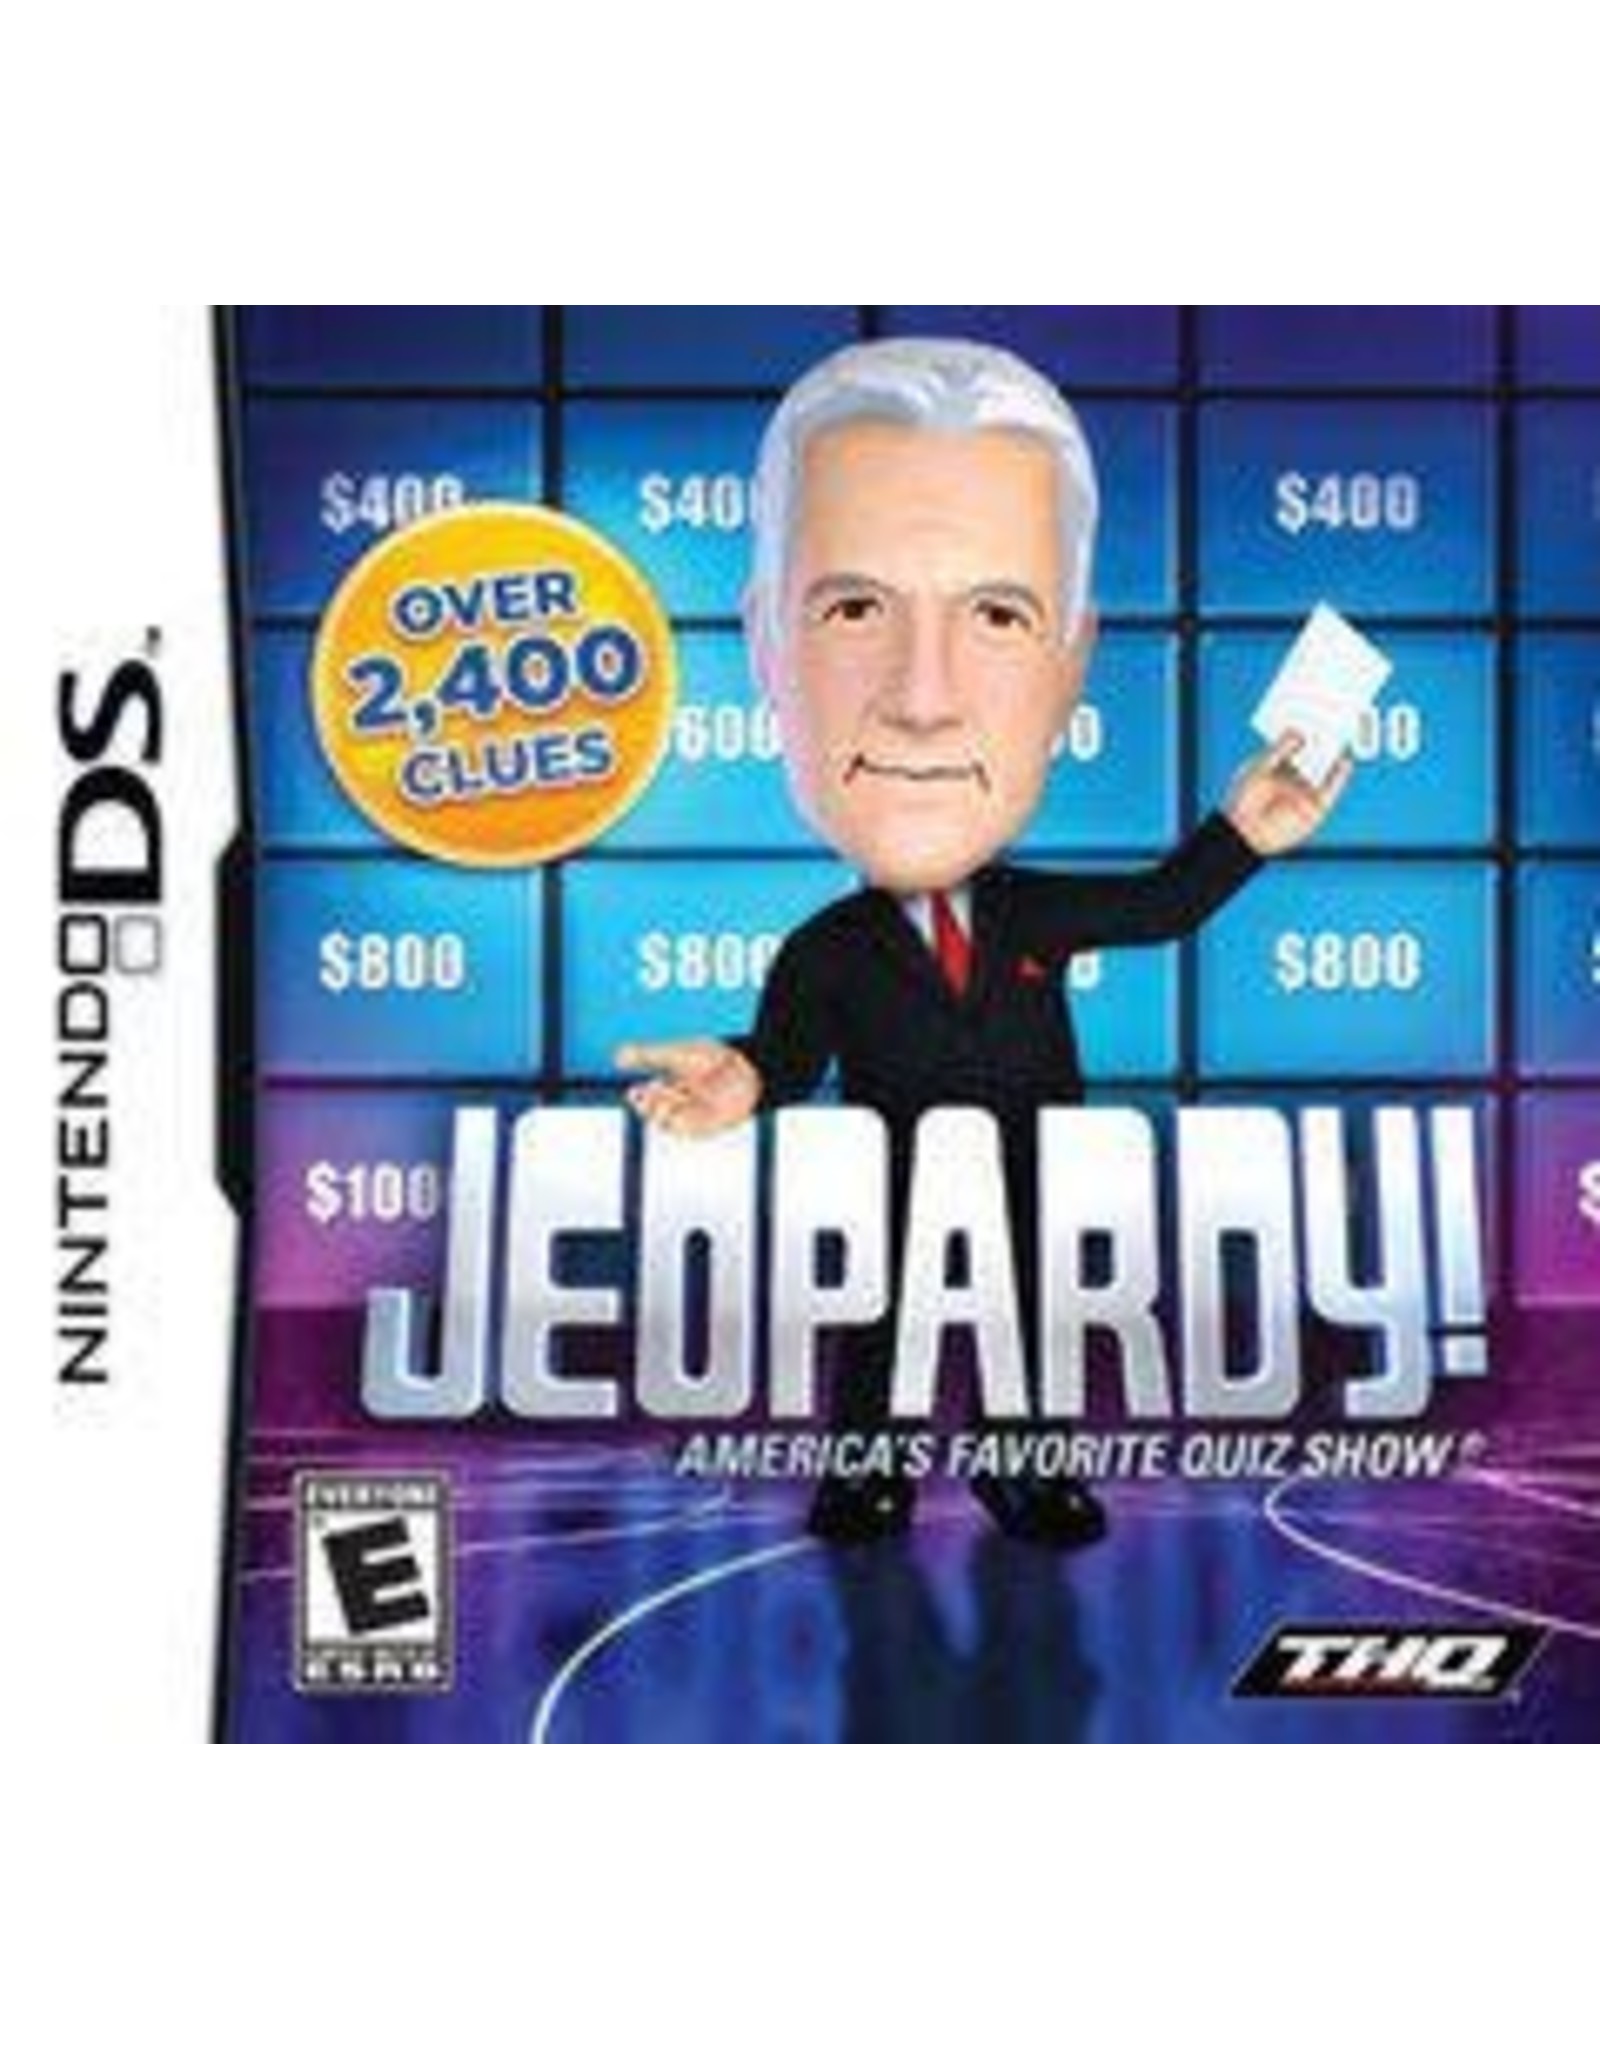 Nintendo DS Jeopardy (CiB)